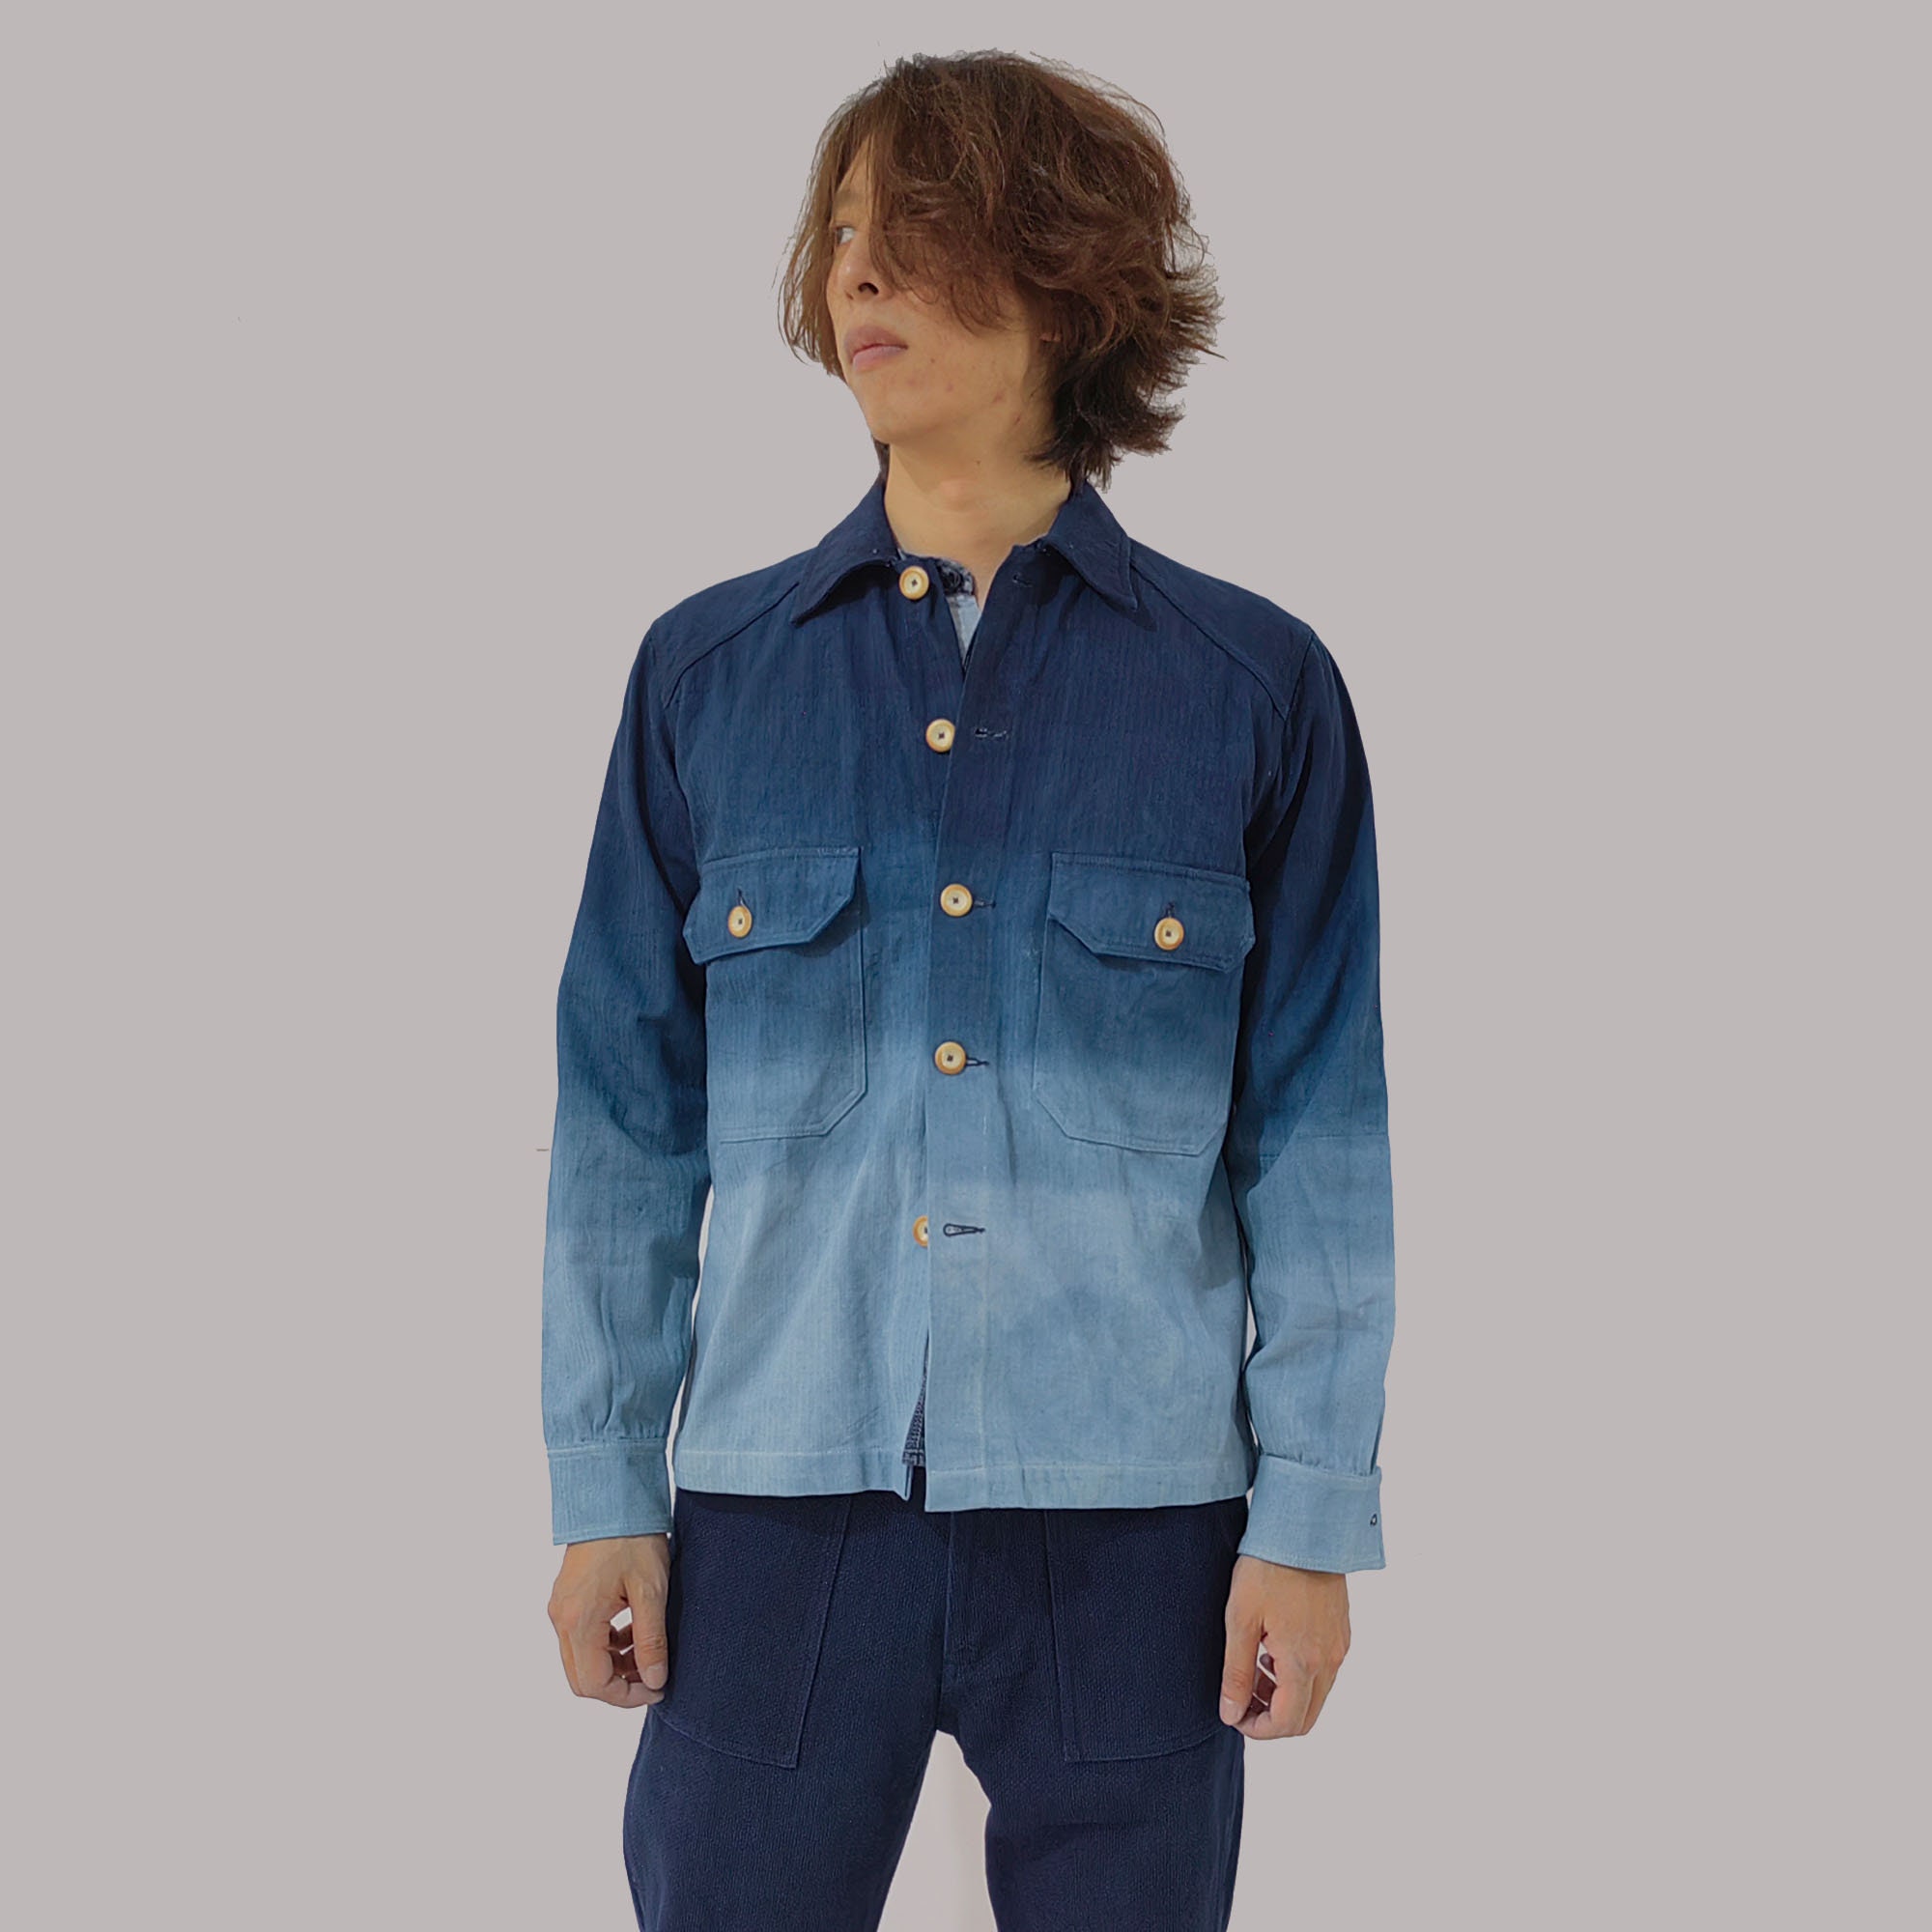 Indigo Blue Gradient Dye denim jacket chest pocket denim jacket hand dye denim jacket fitted denim jacket plant dye denim jacketthumbnail